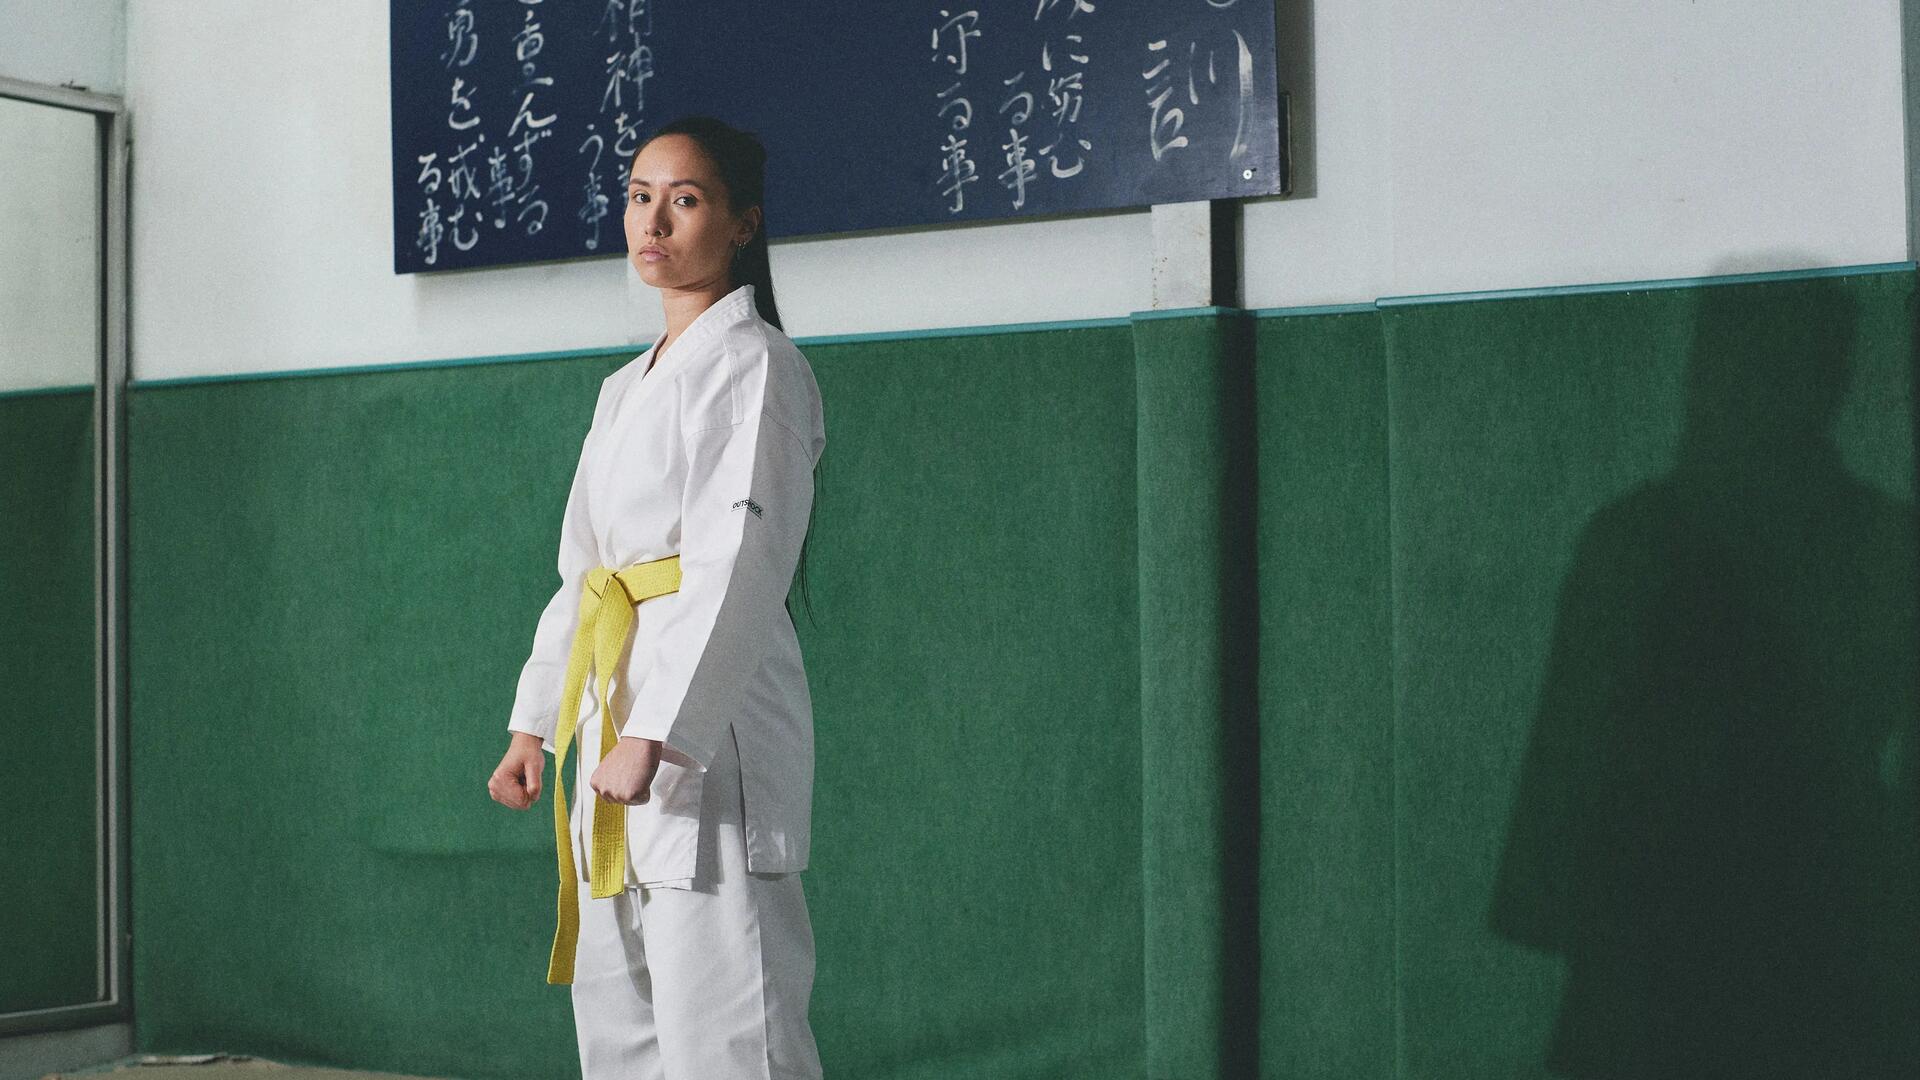 kobieta ubrana w kimono z żółtym pasem do karate